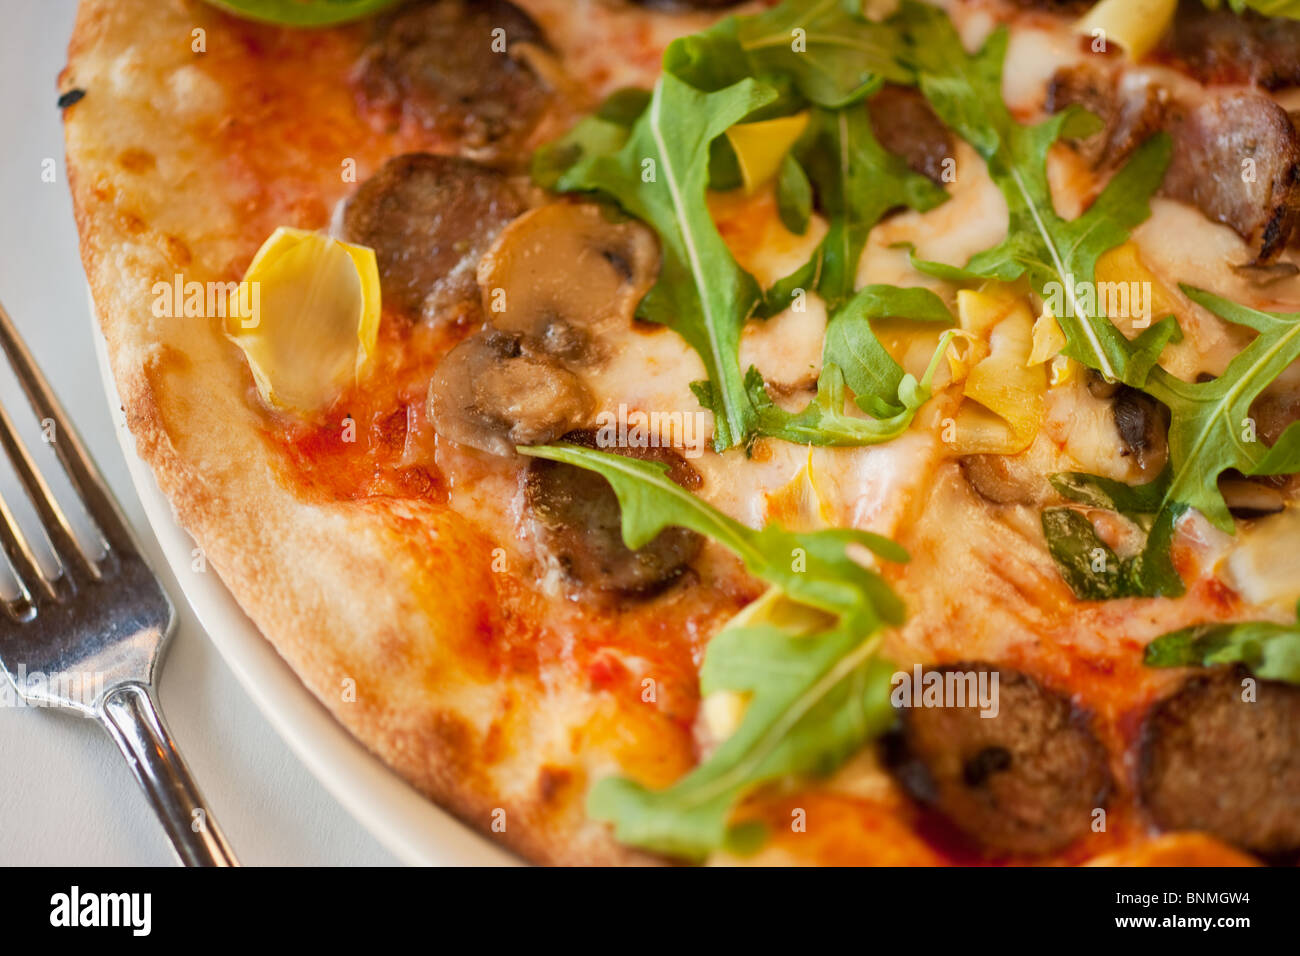 quattro stagioni pizza, with mozzarella cheese, artichokes, mushrooms, sausage and arugula,  Orcutt, California Stock Photo